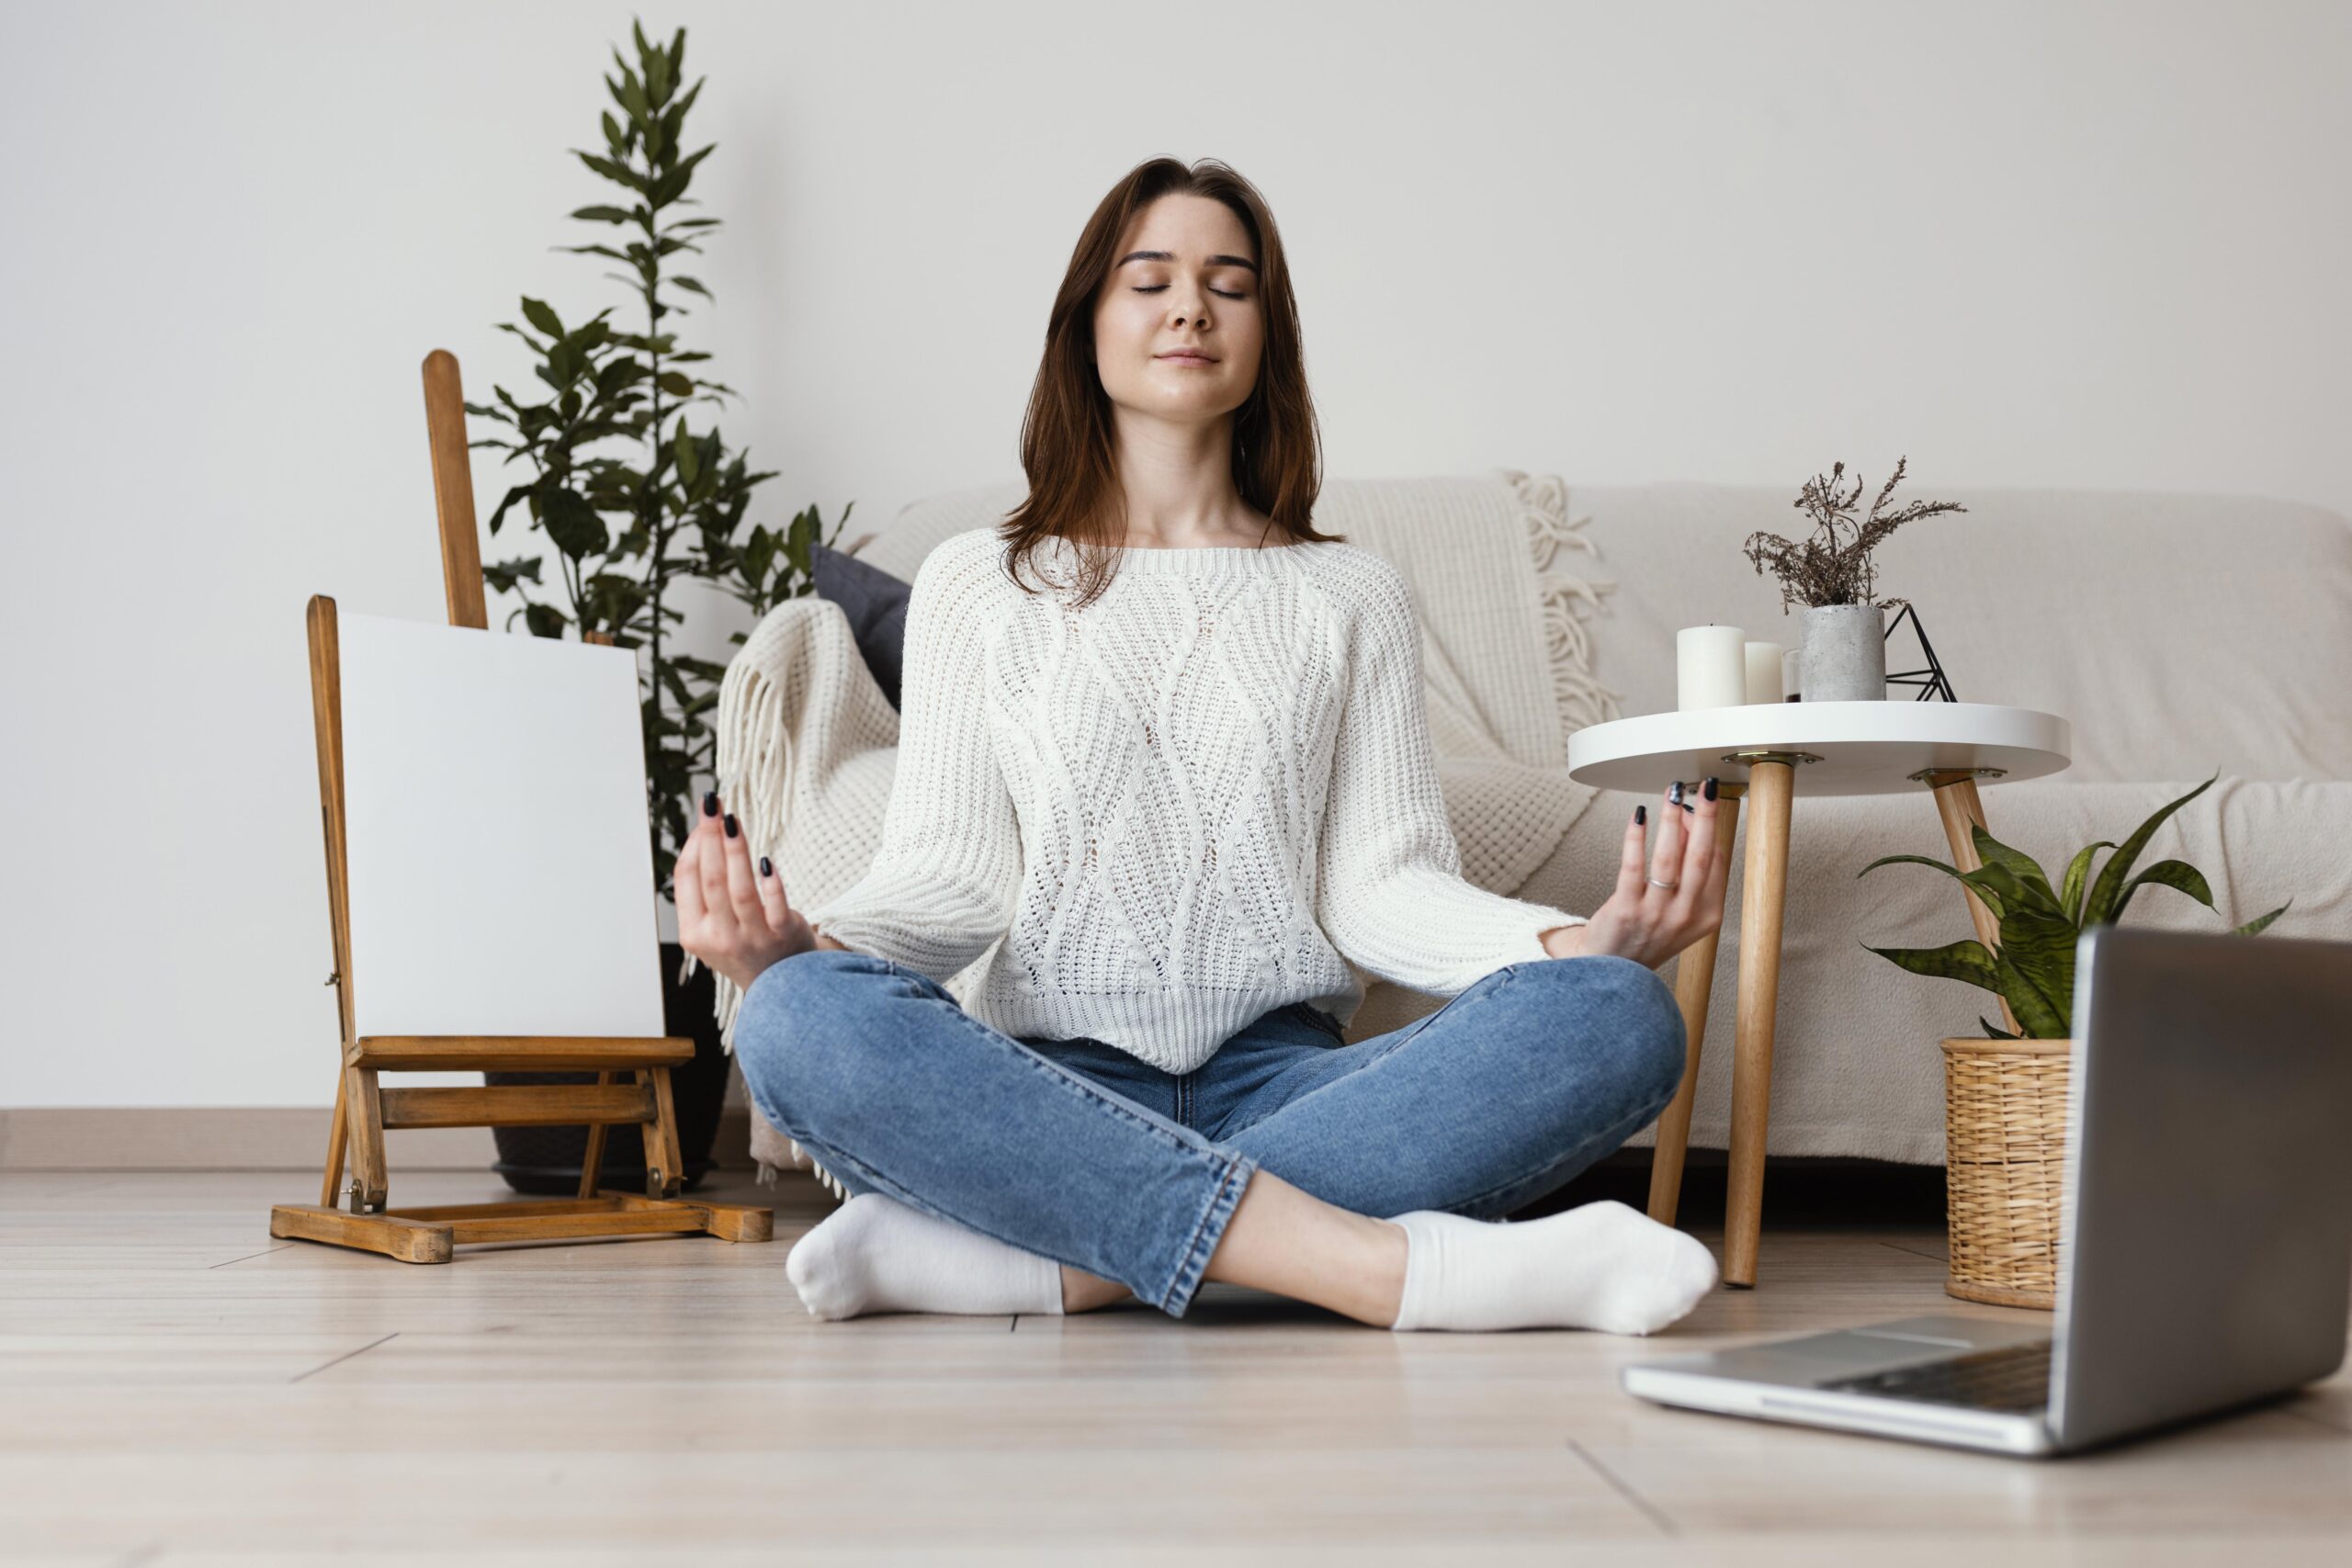 La gestione dello stress: tecniche di rilassamento e mindfulness